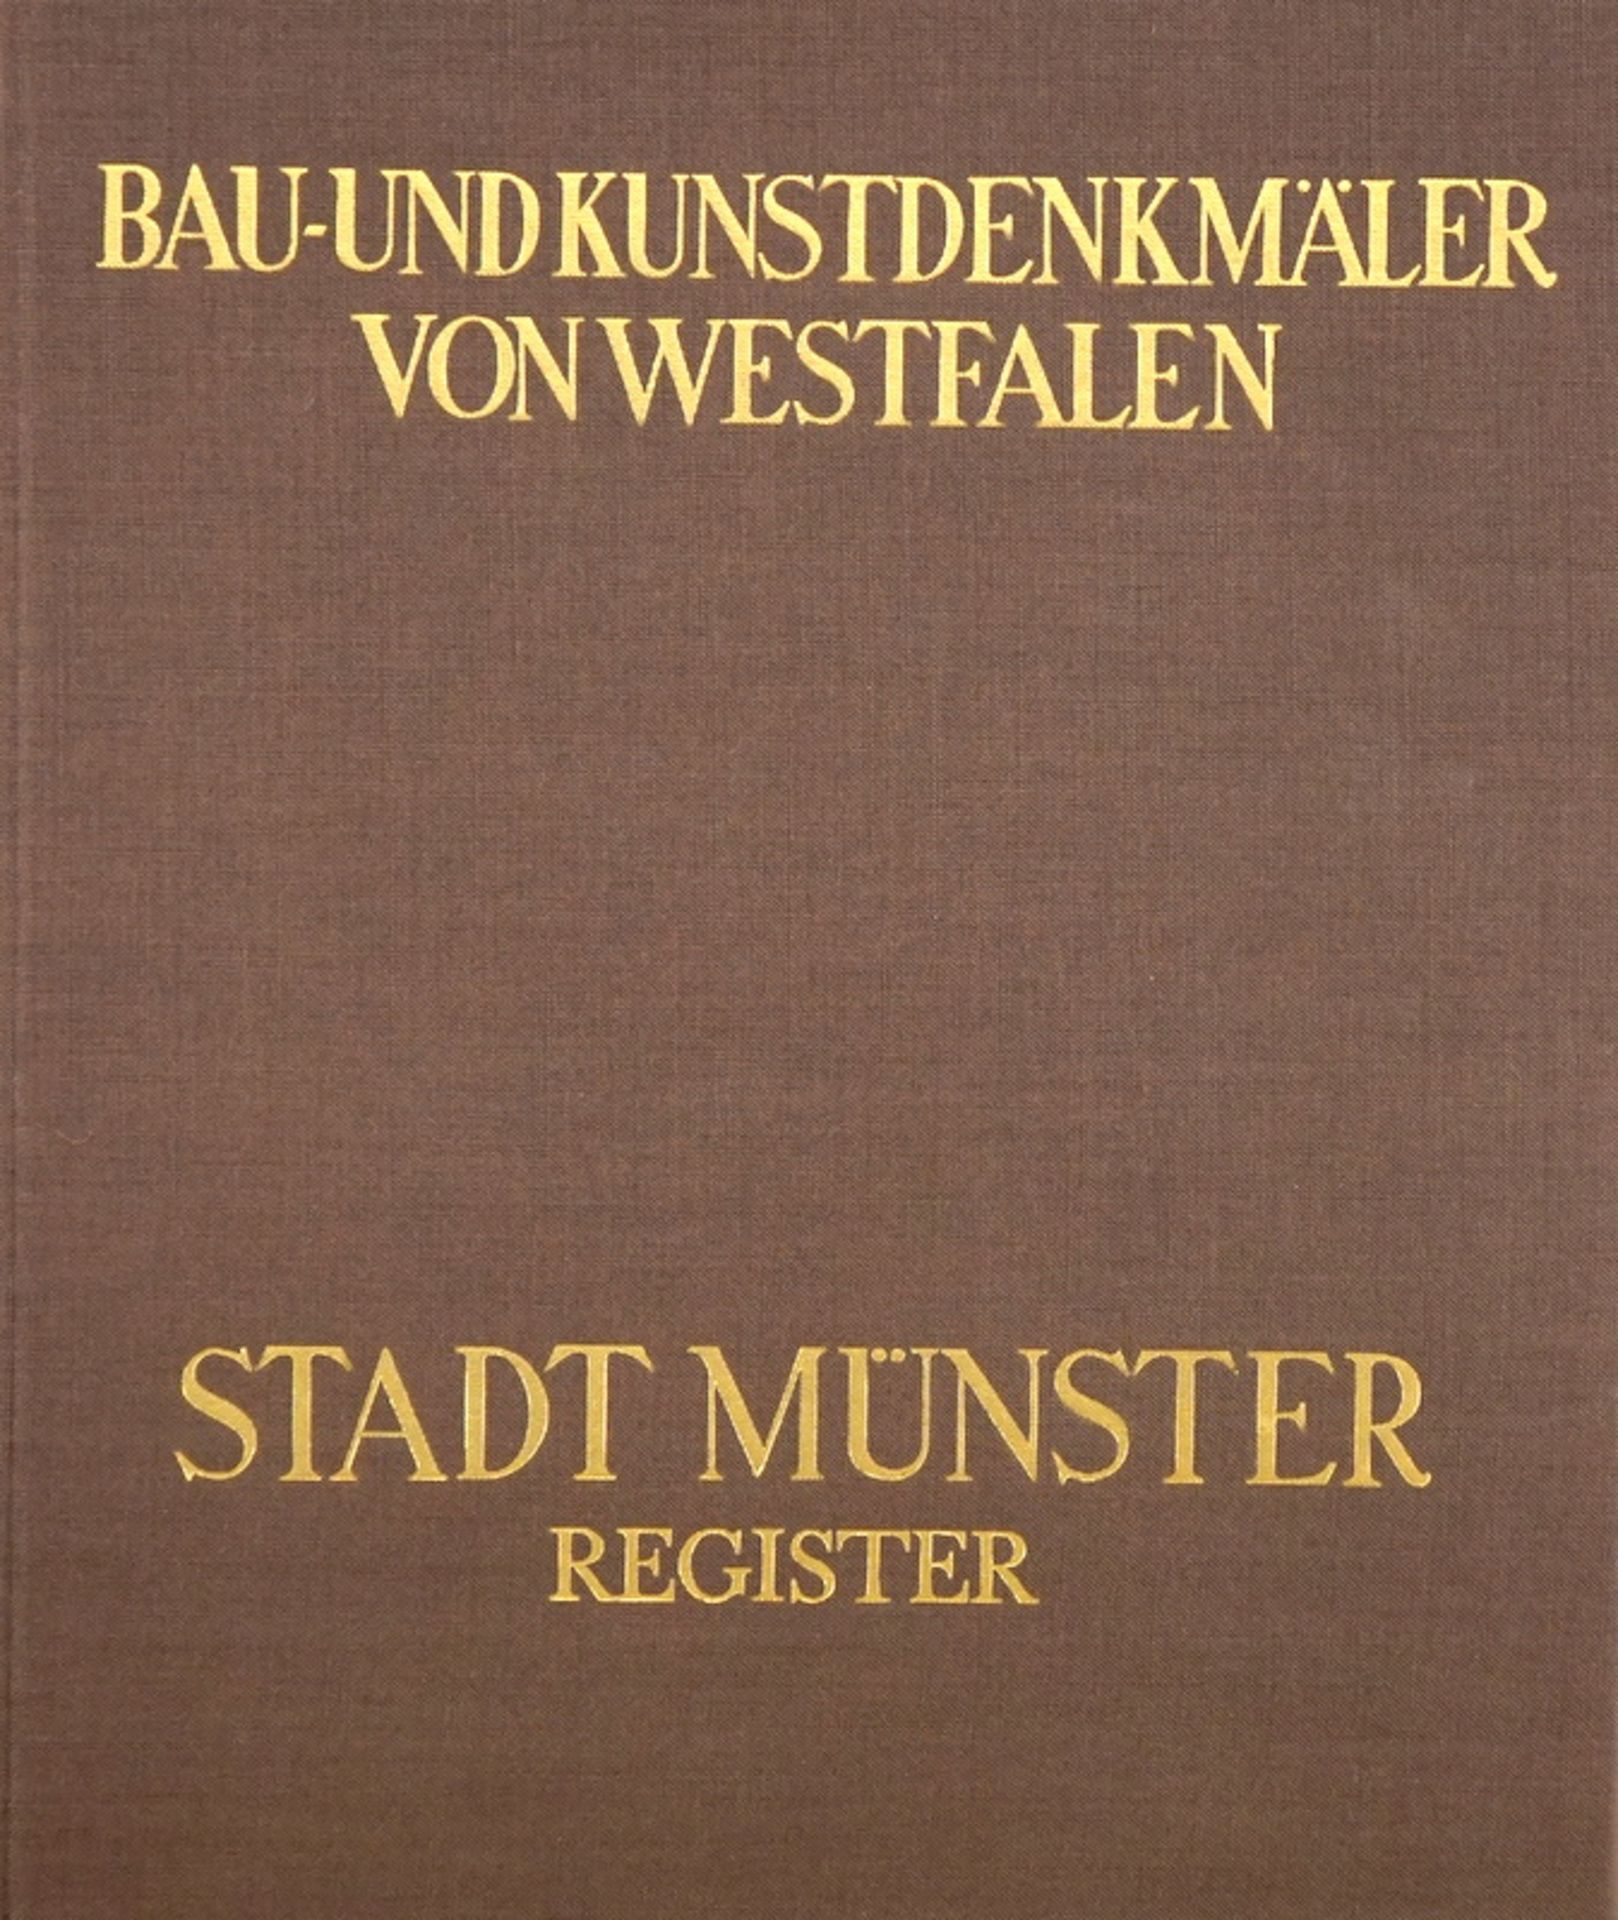 Geisberg, Max: Bau- und Kunstdenkmäler von Westfalen, 6 Bände, 1937 - Image 2 of 2